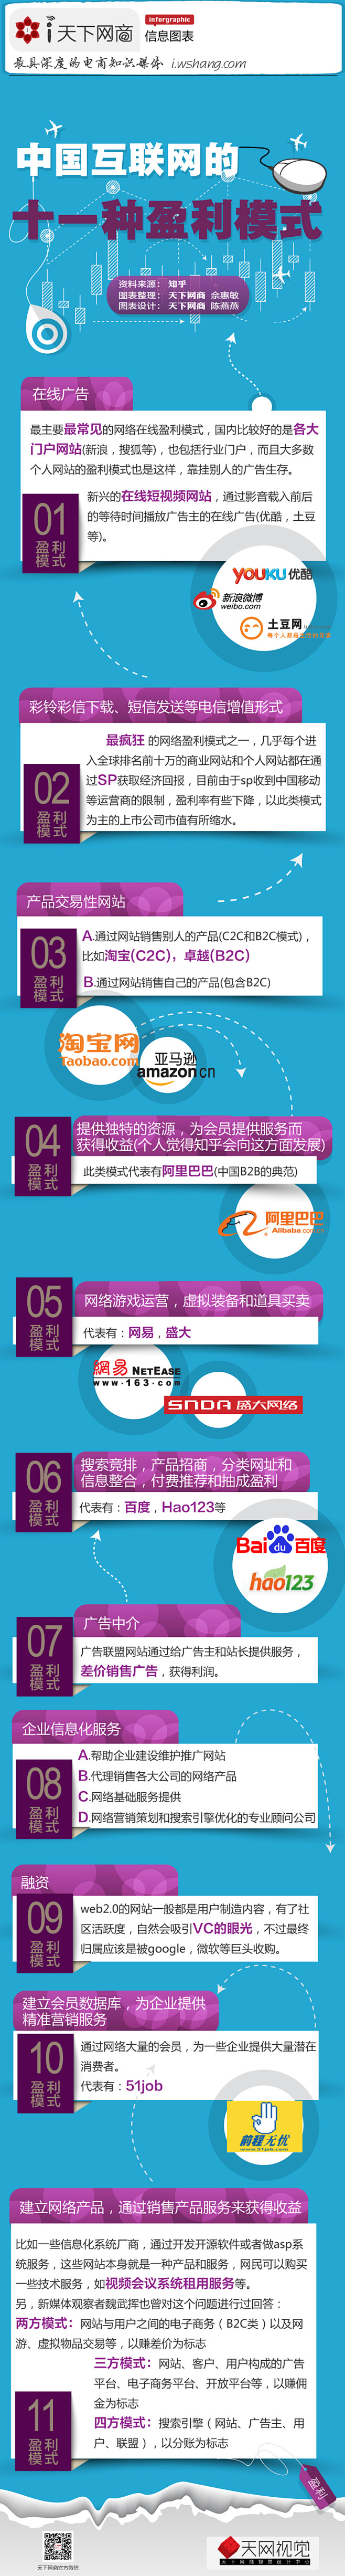 【读图】中国互联网的十一种盈利模式